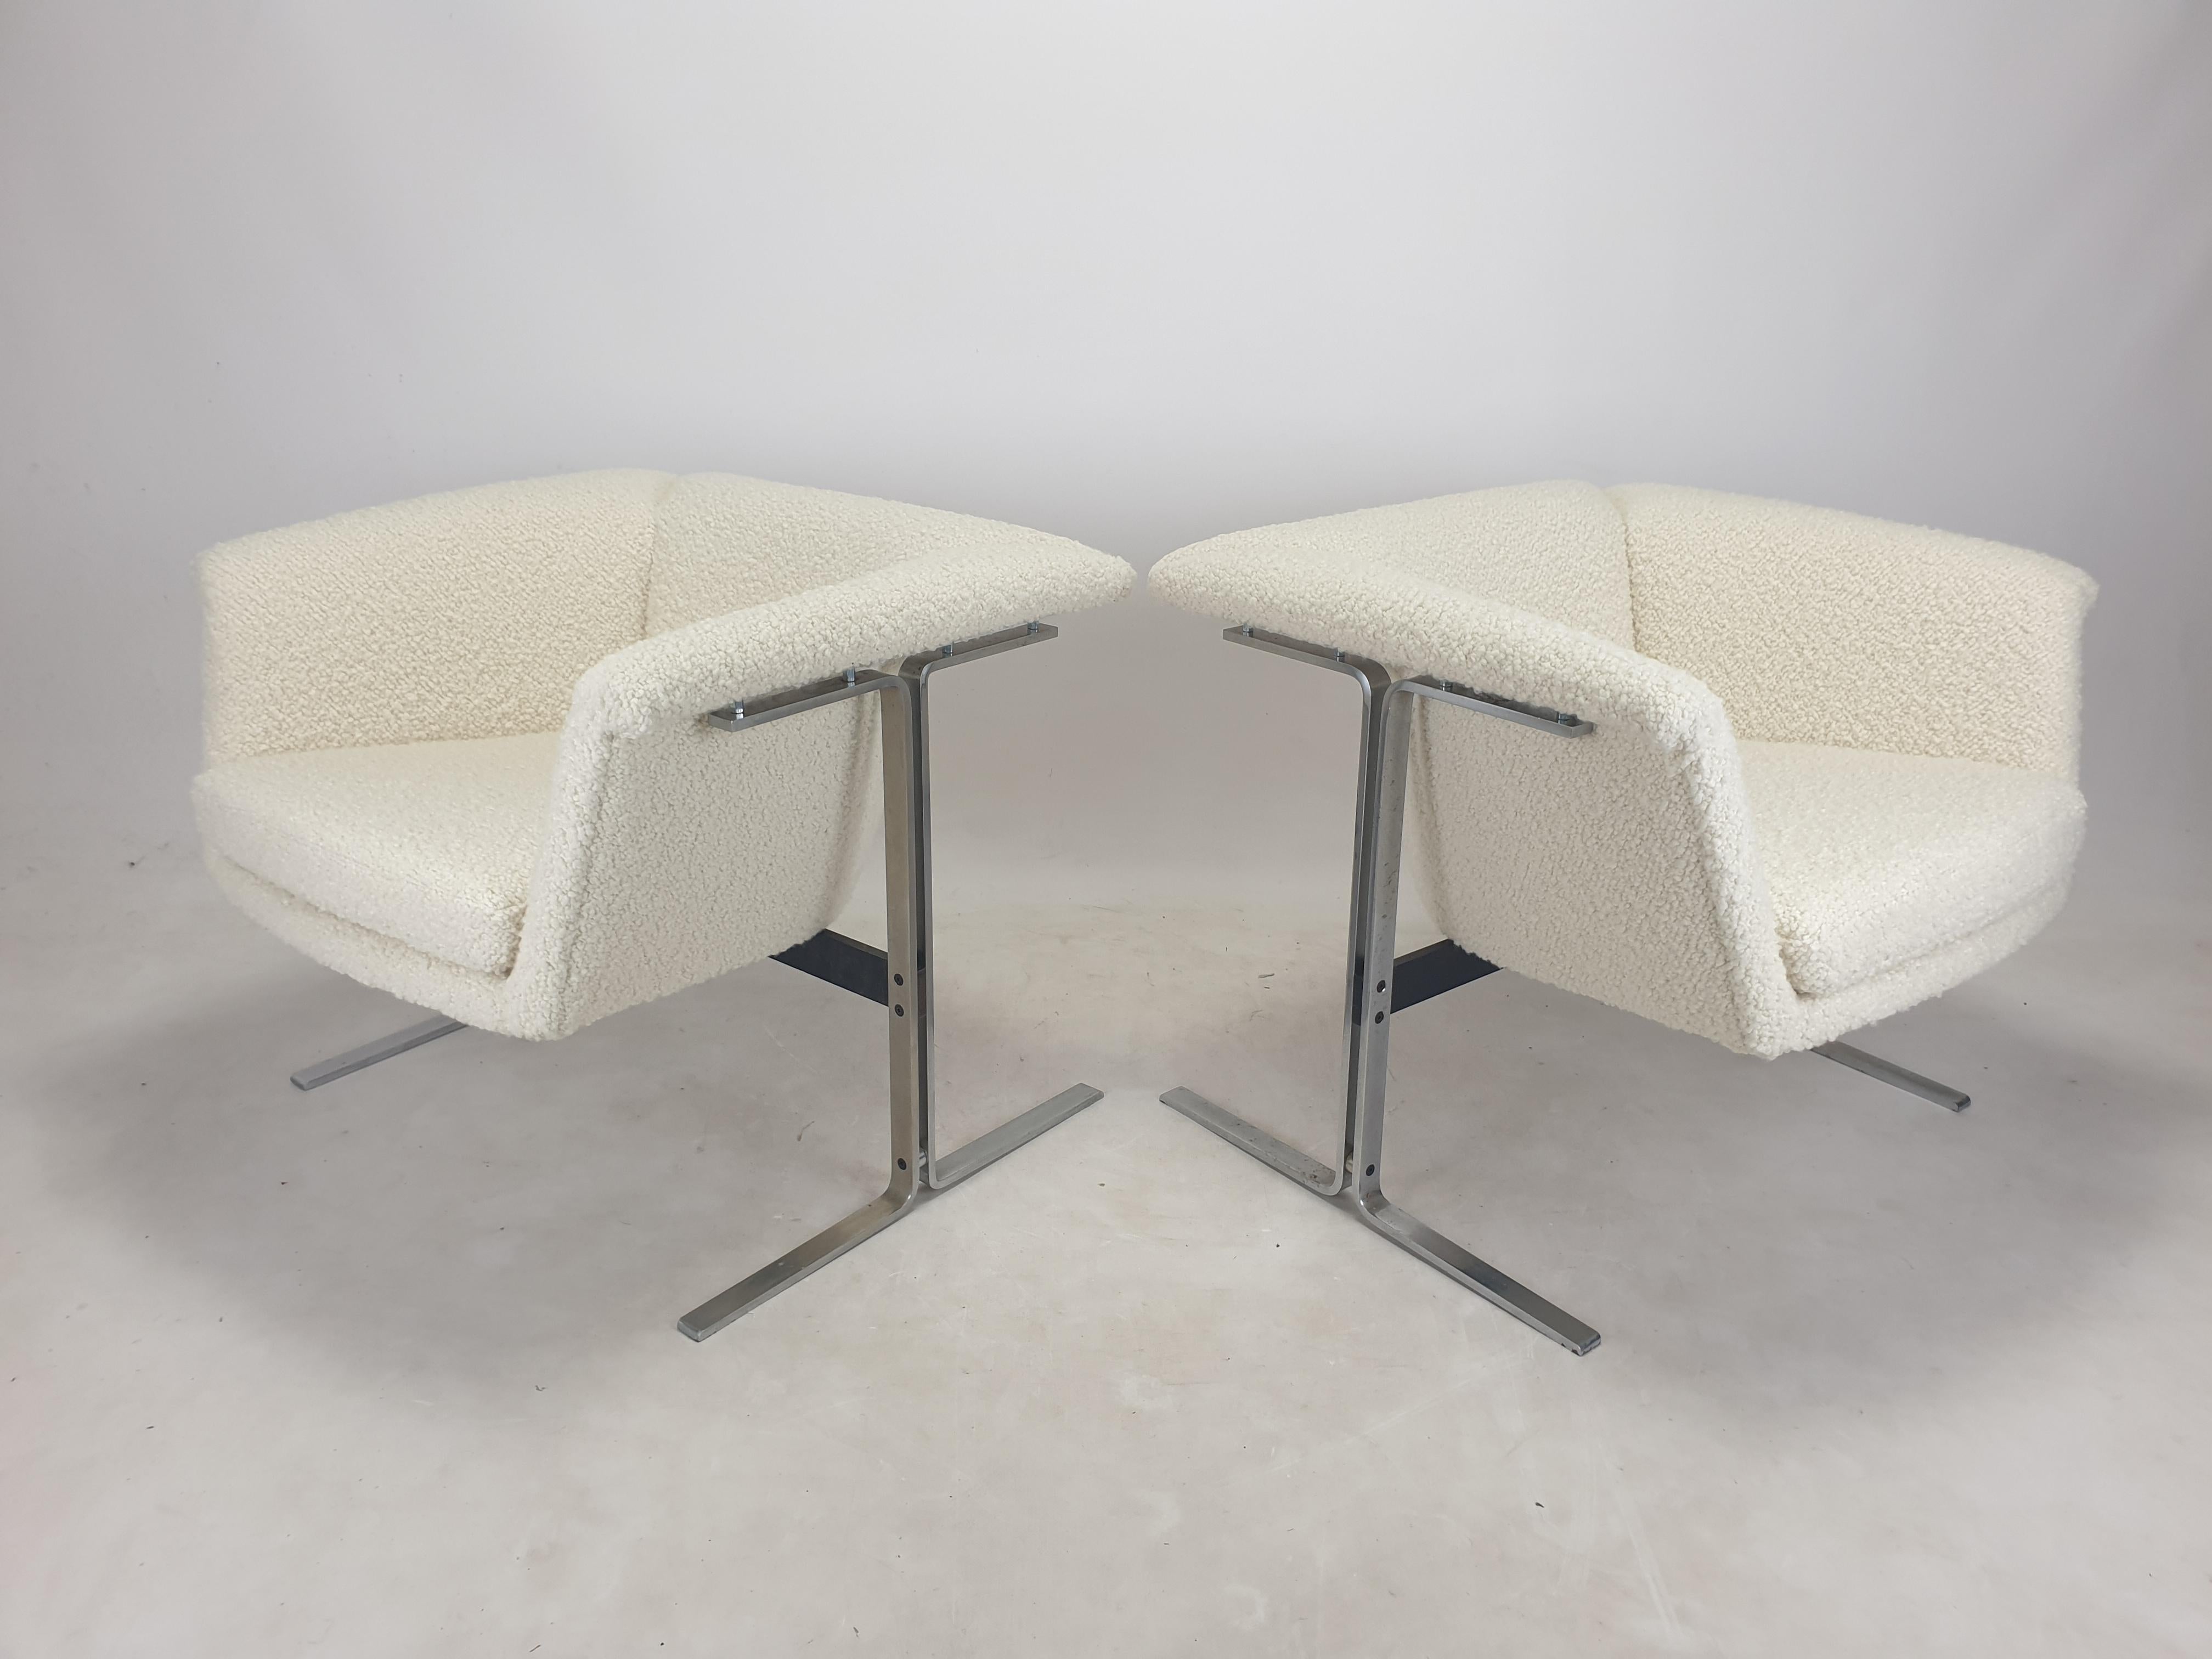 Une très belle paire de chaises modèle 042 conçue par Geoffrey Harcourt en 1963 pour Artifort.

Les chaises 042 emblématiques de Harcourt ont été utilisées dans le film phare de Stanley Kubrik 